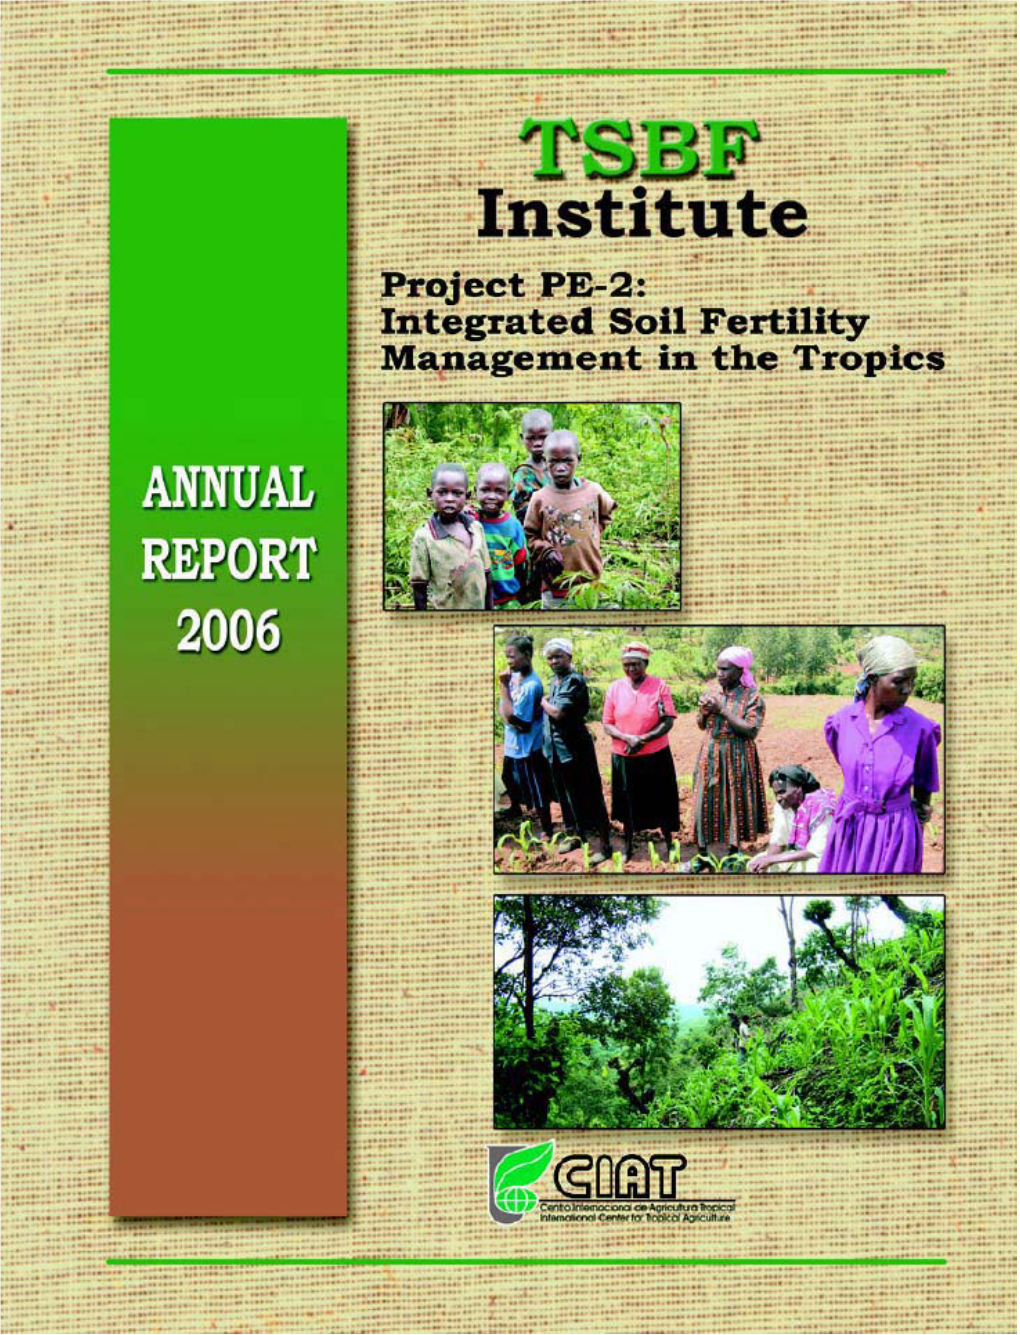 Report 2006 Centro Internacional De Agricultura Tropical (CIAT) Apartado Aéreo 6713 Cali, Colombia South America